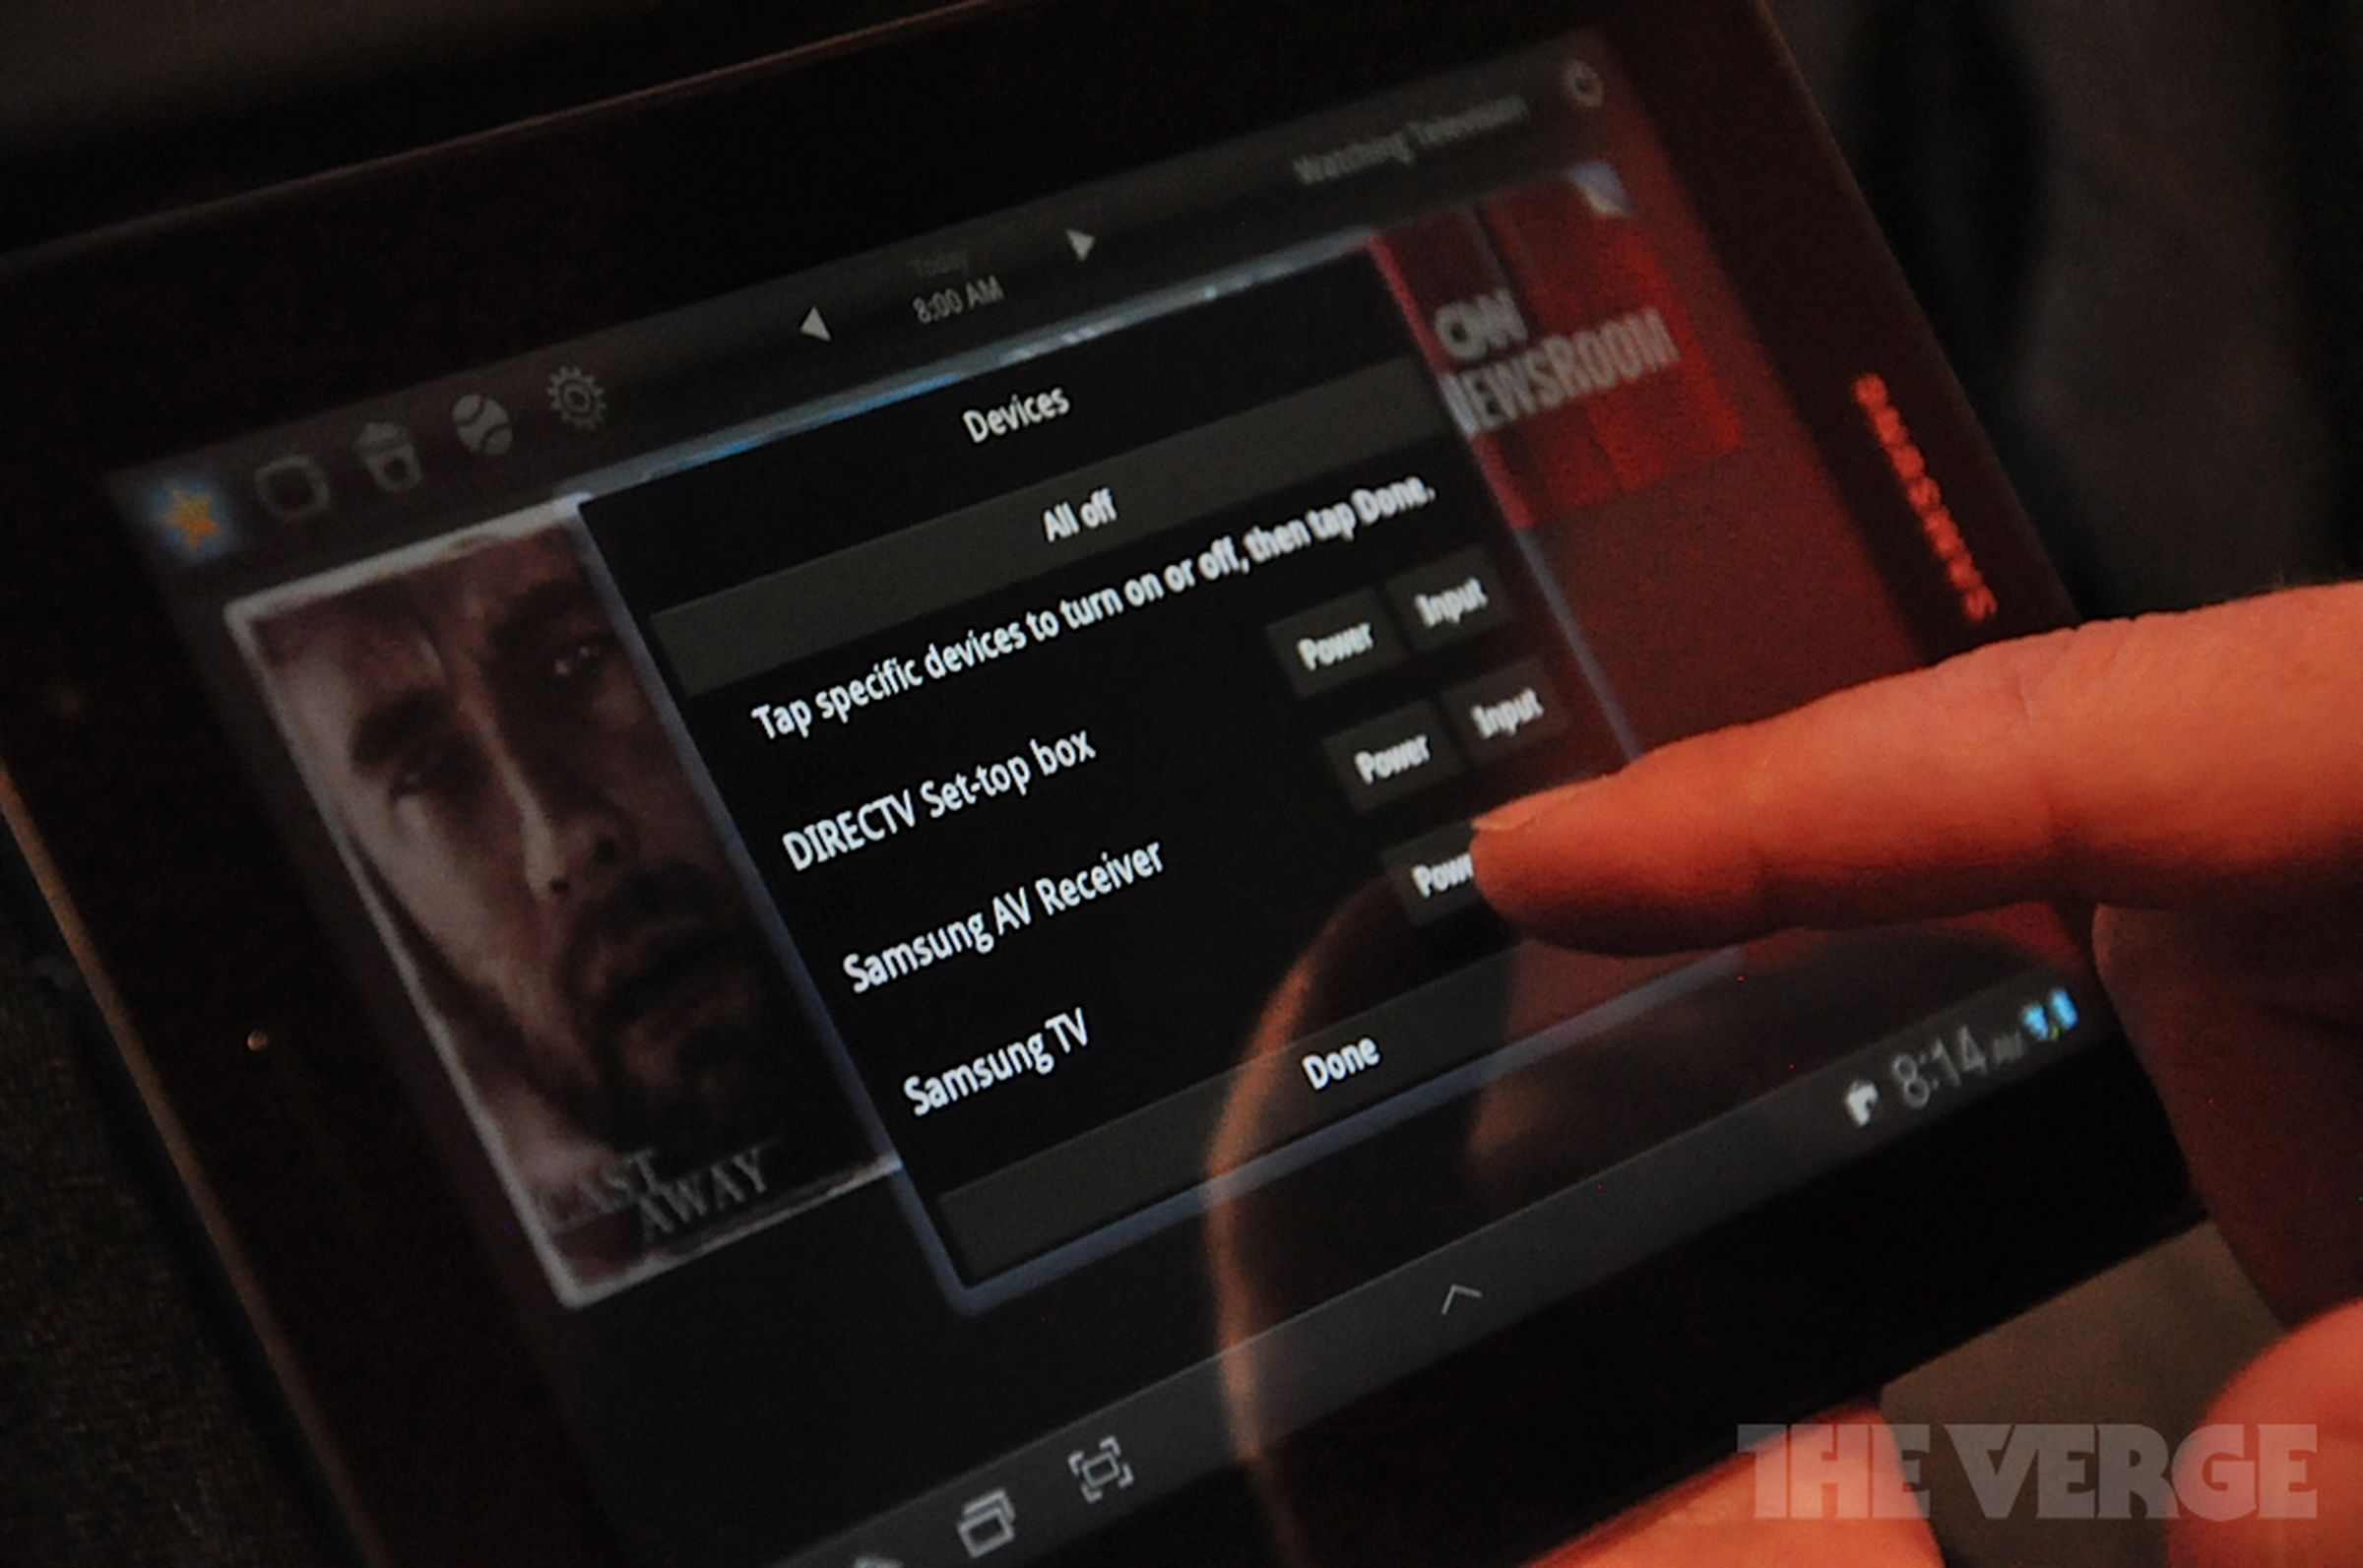 Peel Smart Remote on Galaxy Tab 7.0 Plus demo